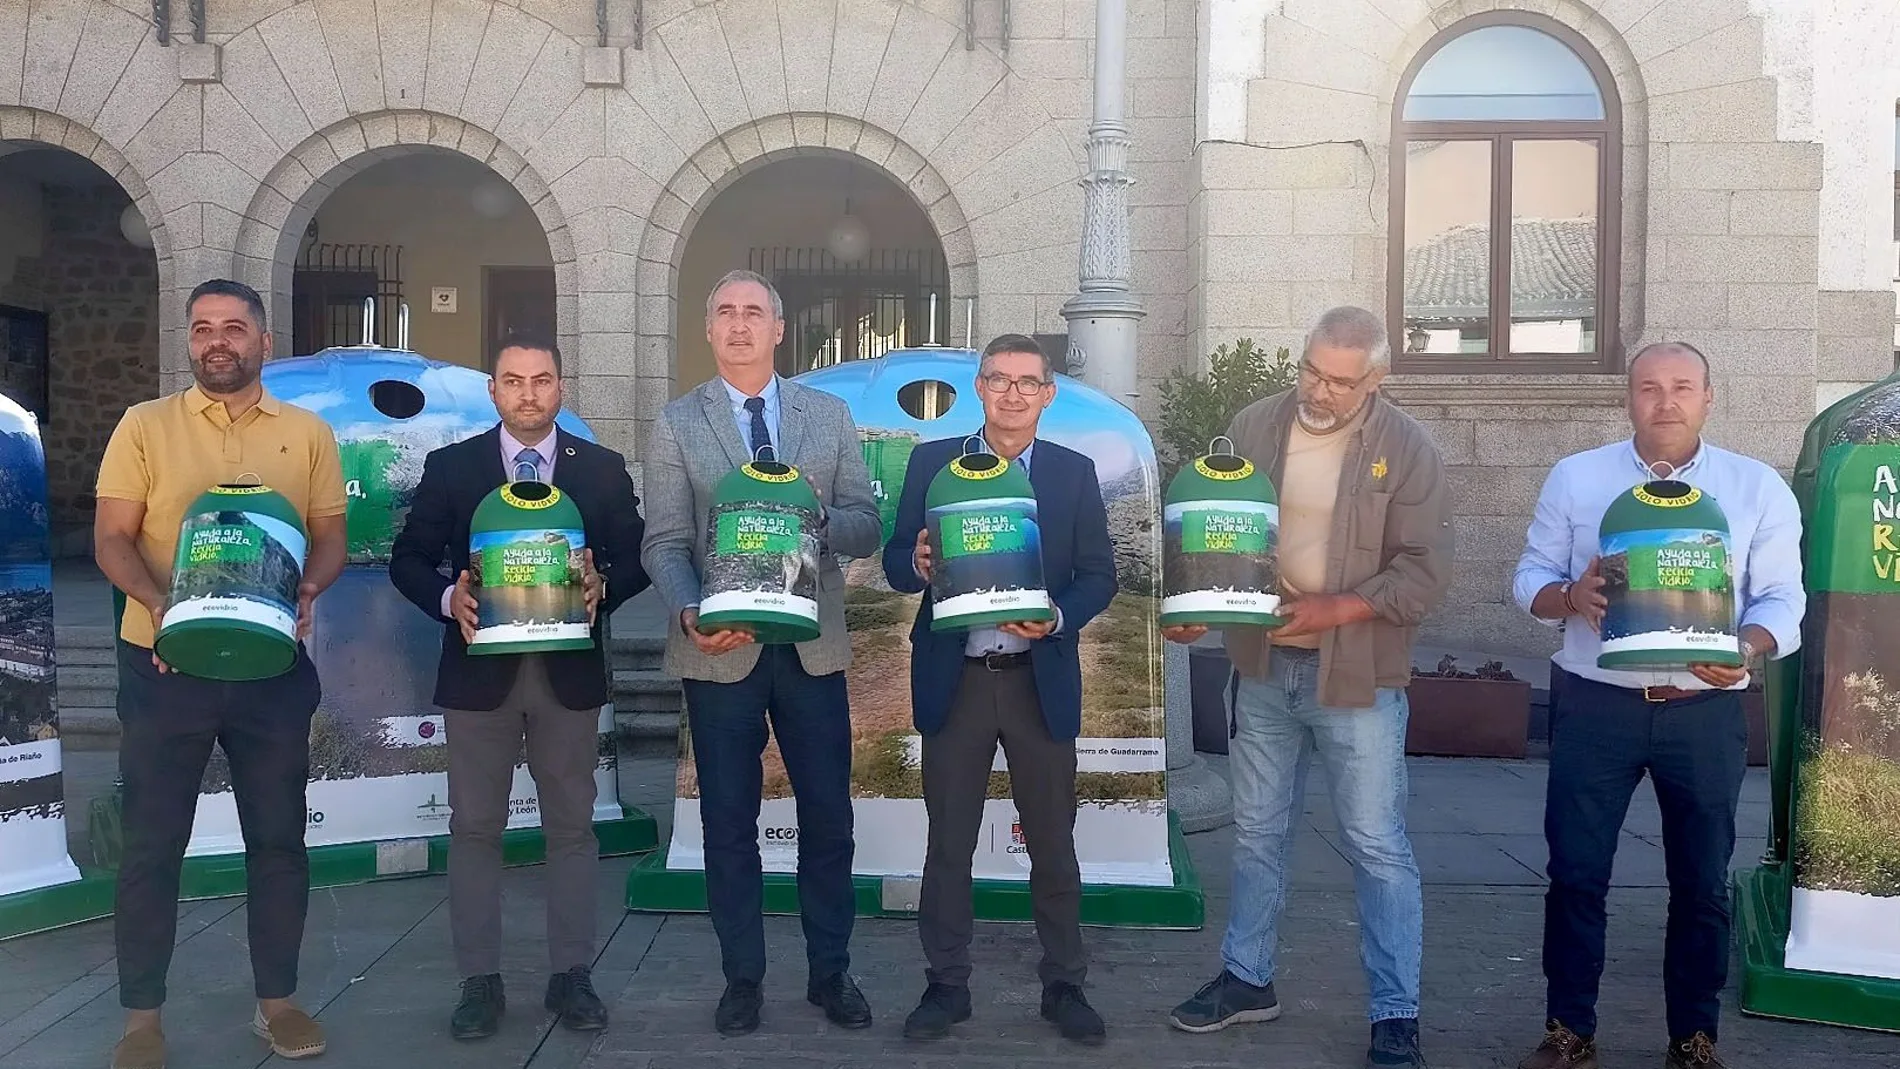 Presentación en El Espinar de la nueva campaña de la Junta y Ecovidrio "Ayuda a la naturaleza, recicla vidrio"